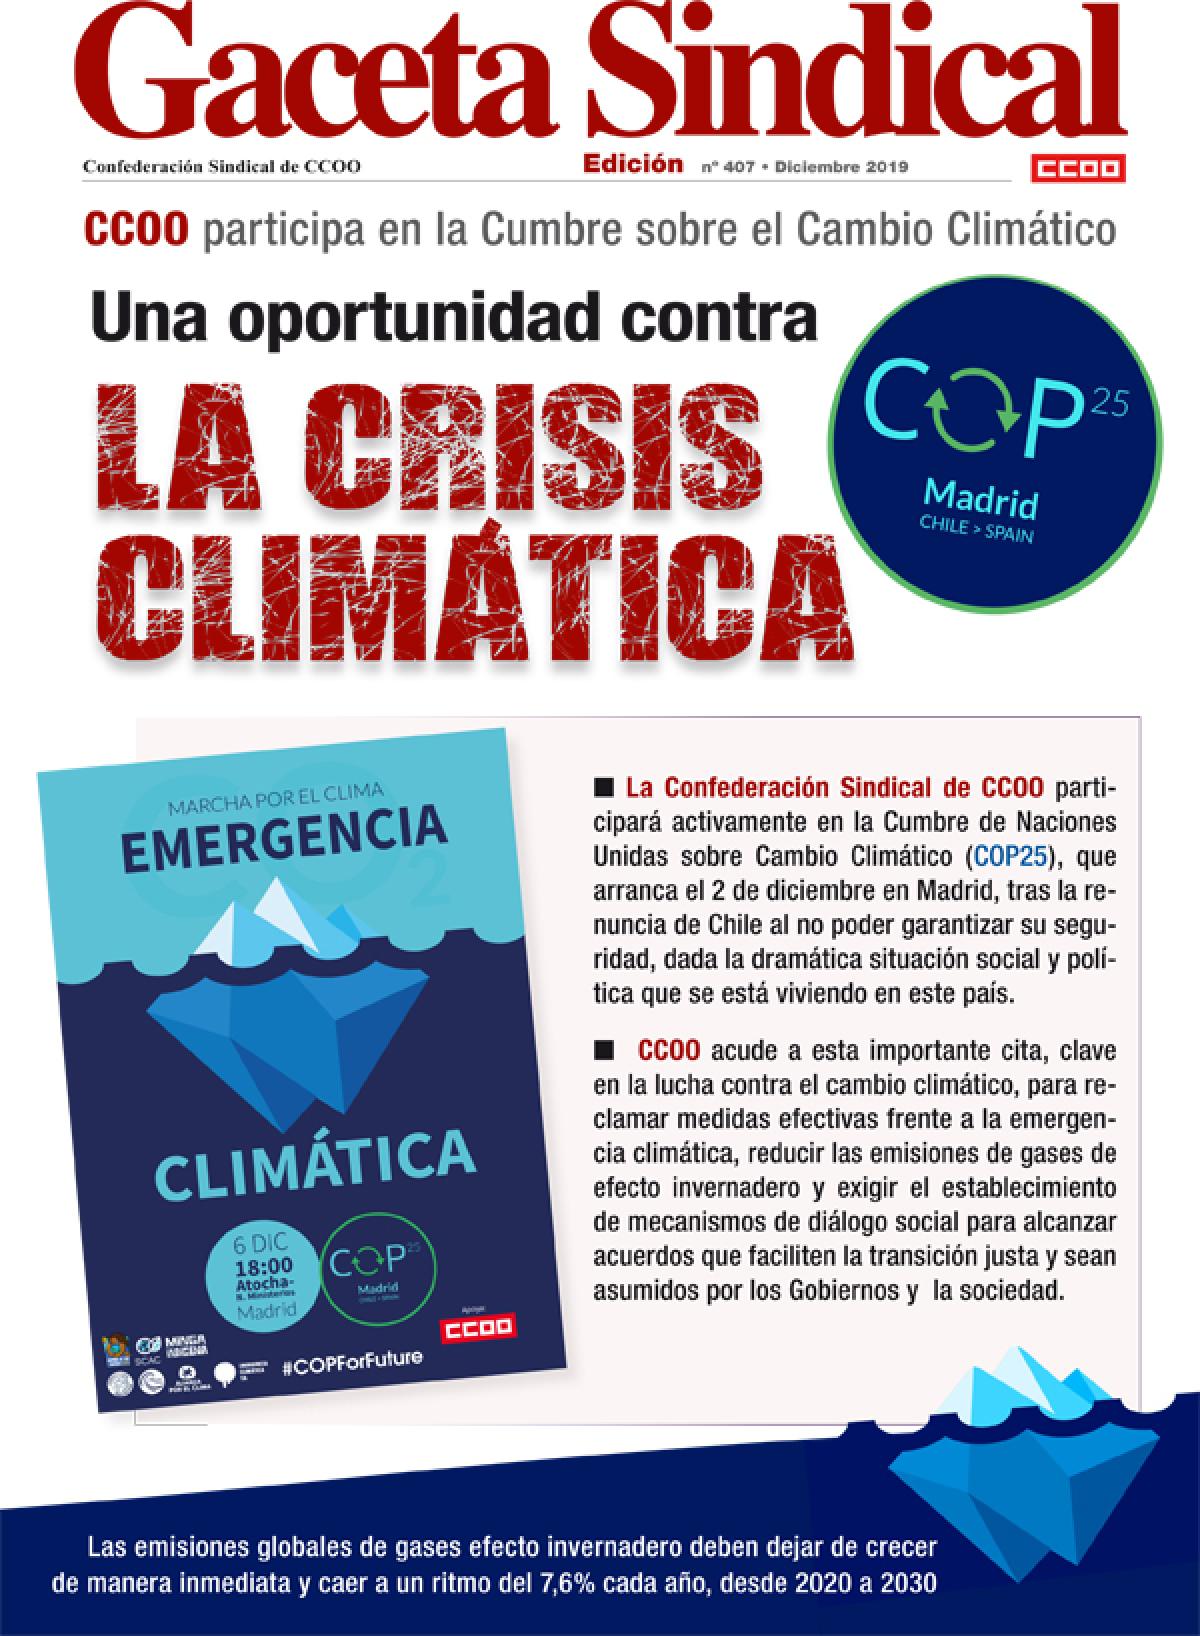 Gaceta Sindical nº 407. CCOO participa en la Cumbre sobre el Cambio Climático